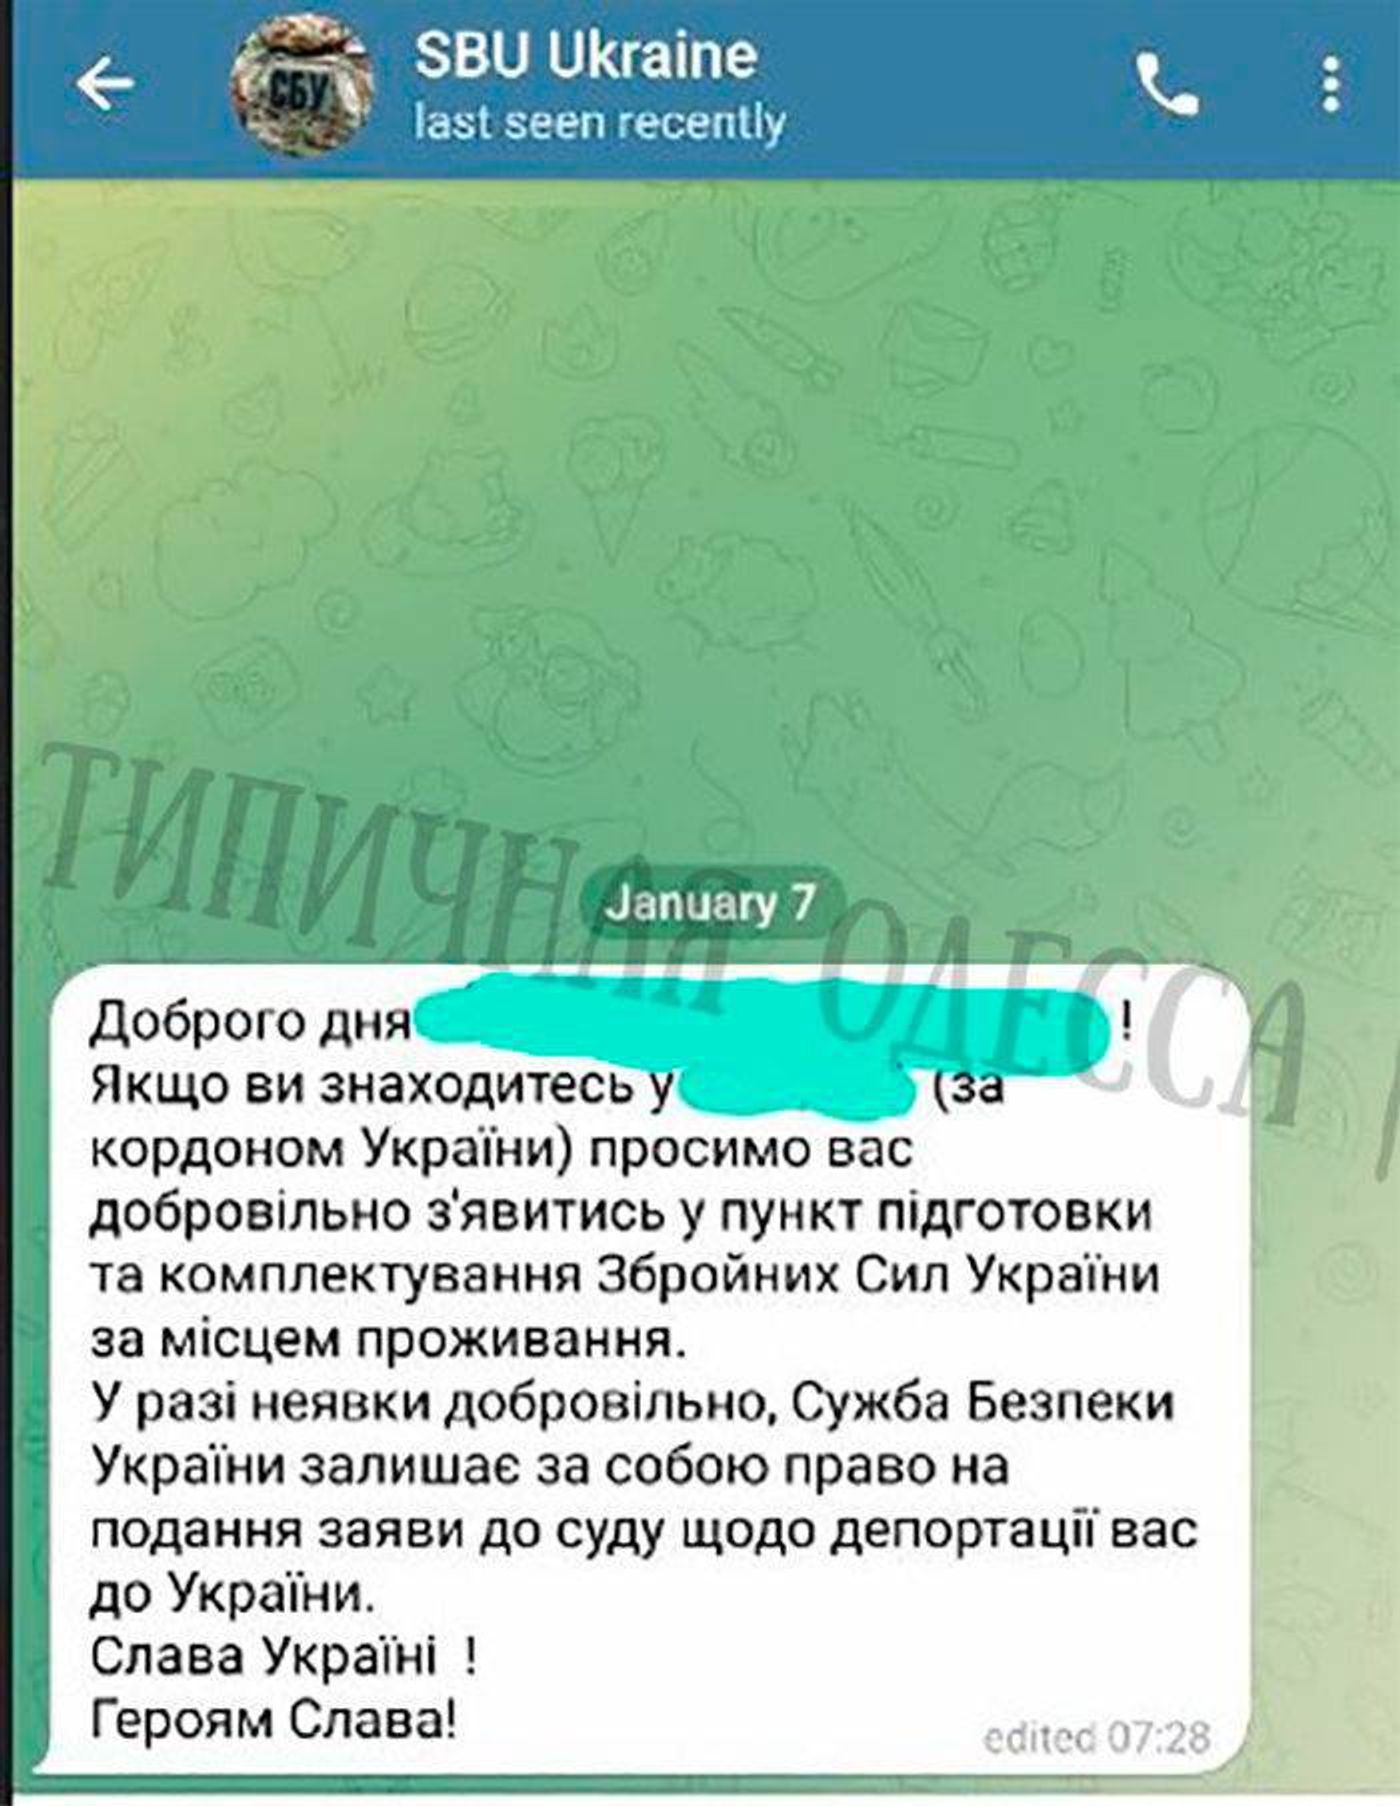 Telegram-канал Соловьева распространил фейковое «послание СБУ» к живущим за границей украинцам